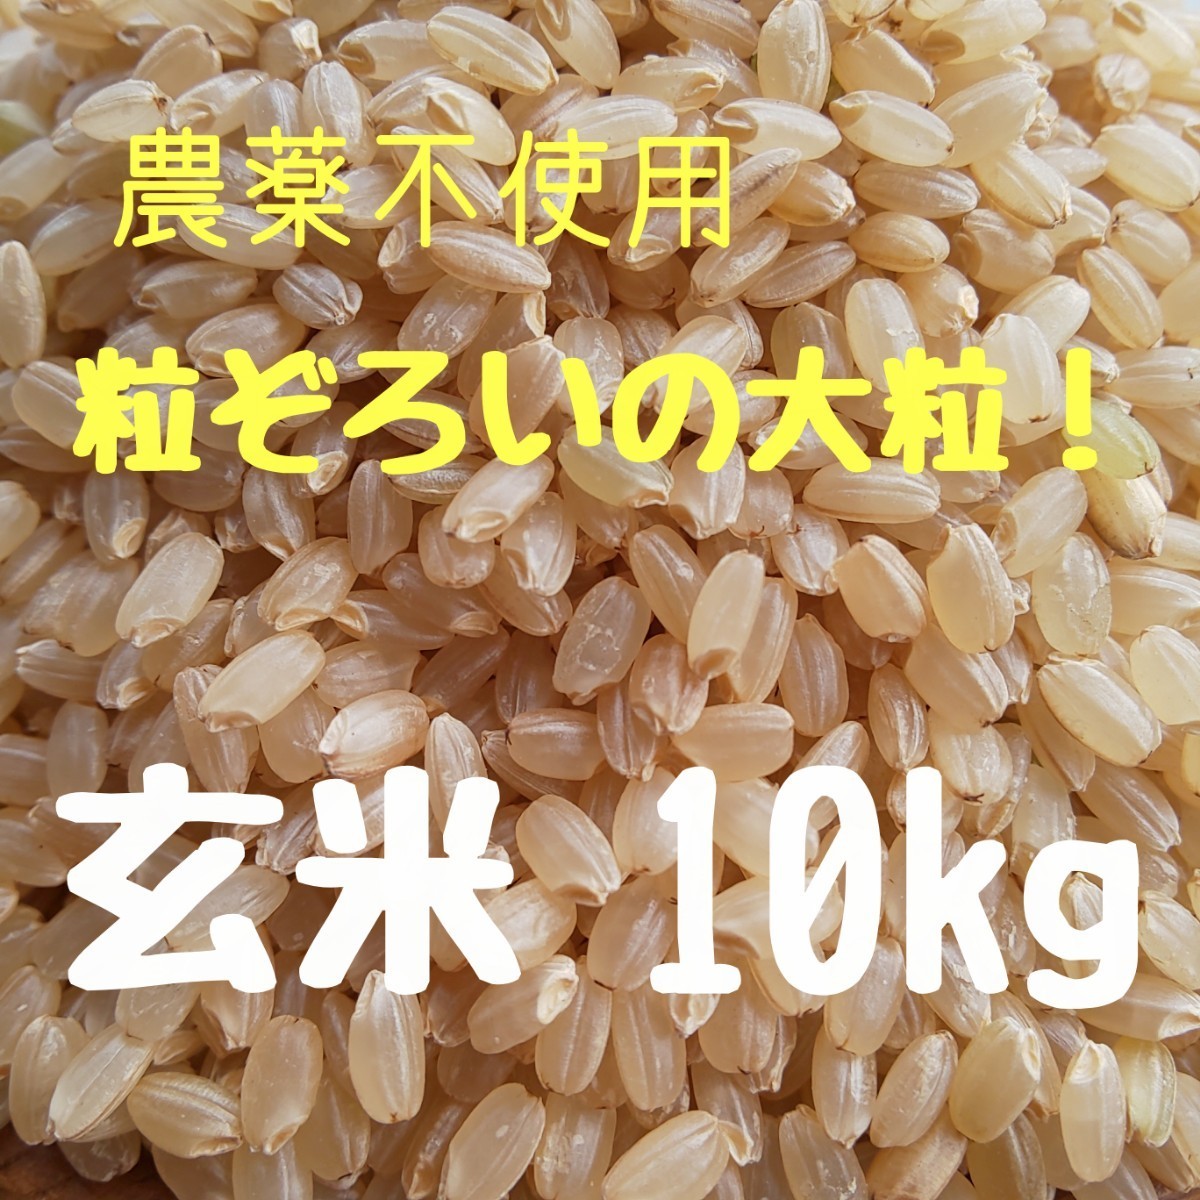 農薬不使用 有機肥料栽培 自然農法 兵庫県産 ヒノヒカリ 玄米 10kg